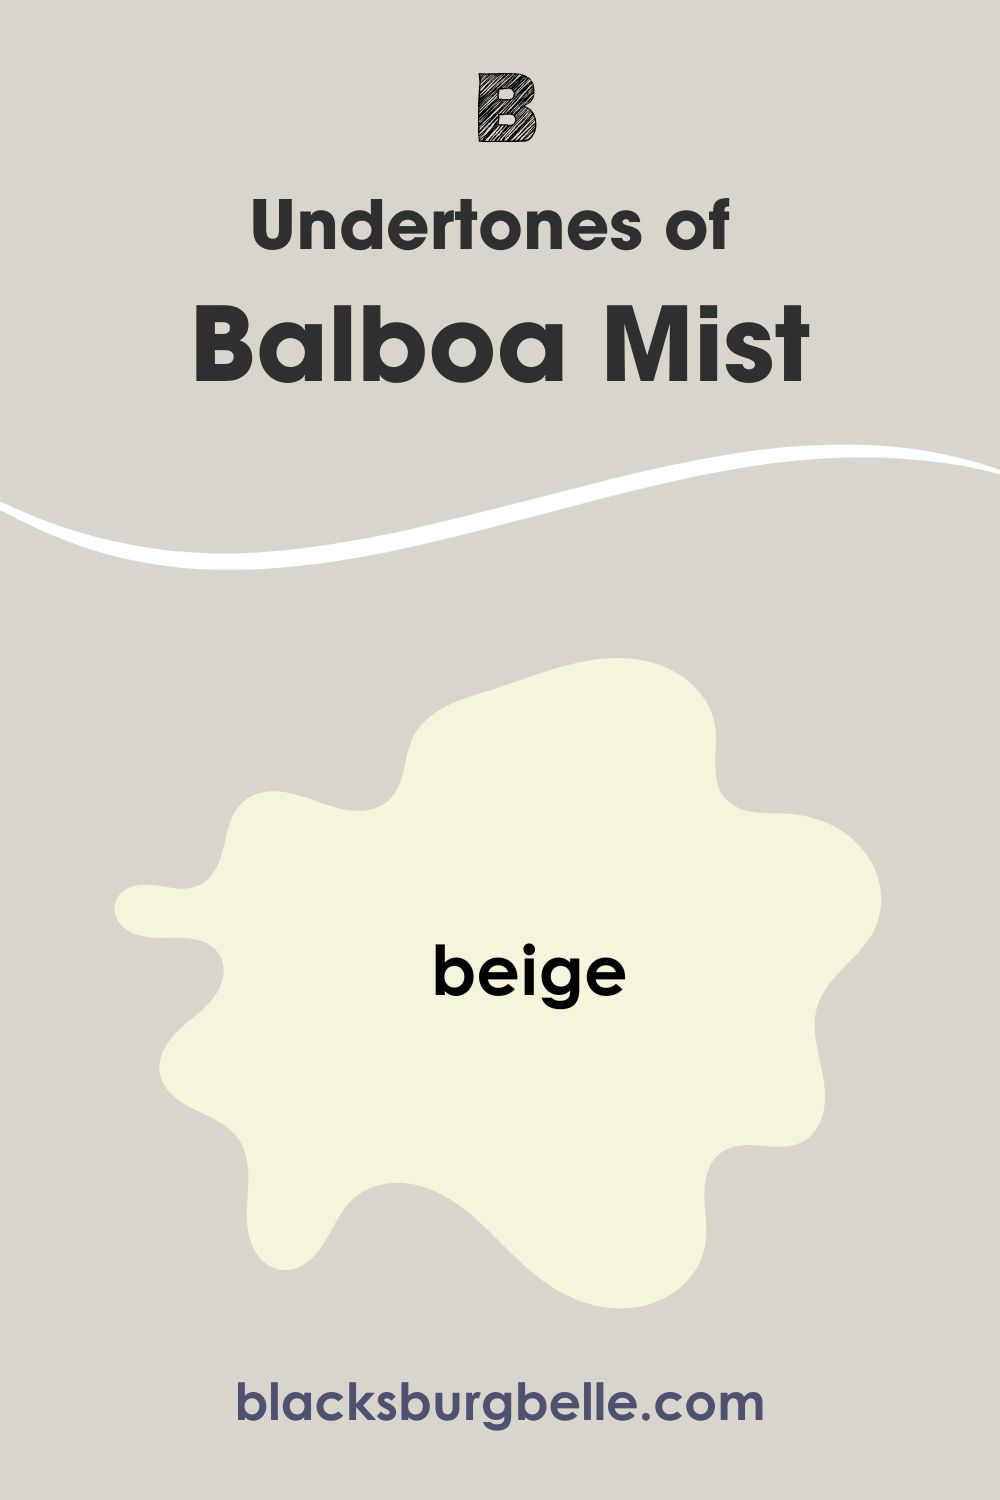 Undertones of Balboa Mist